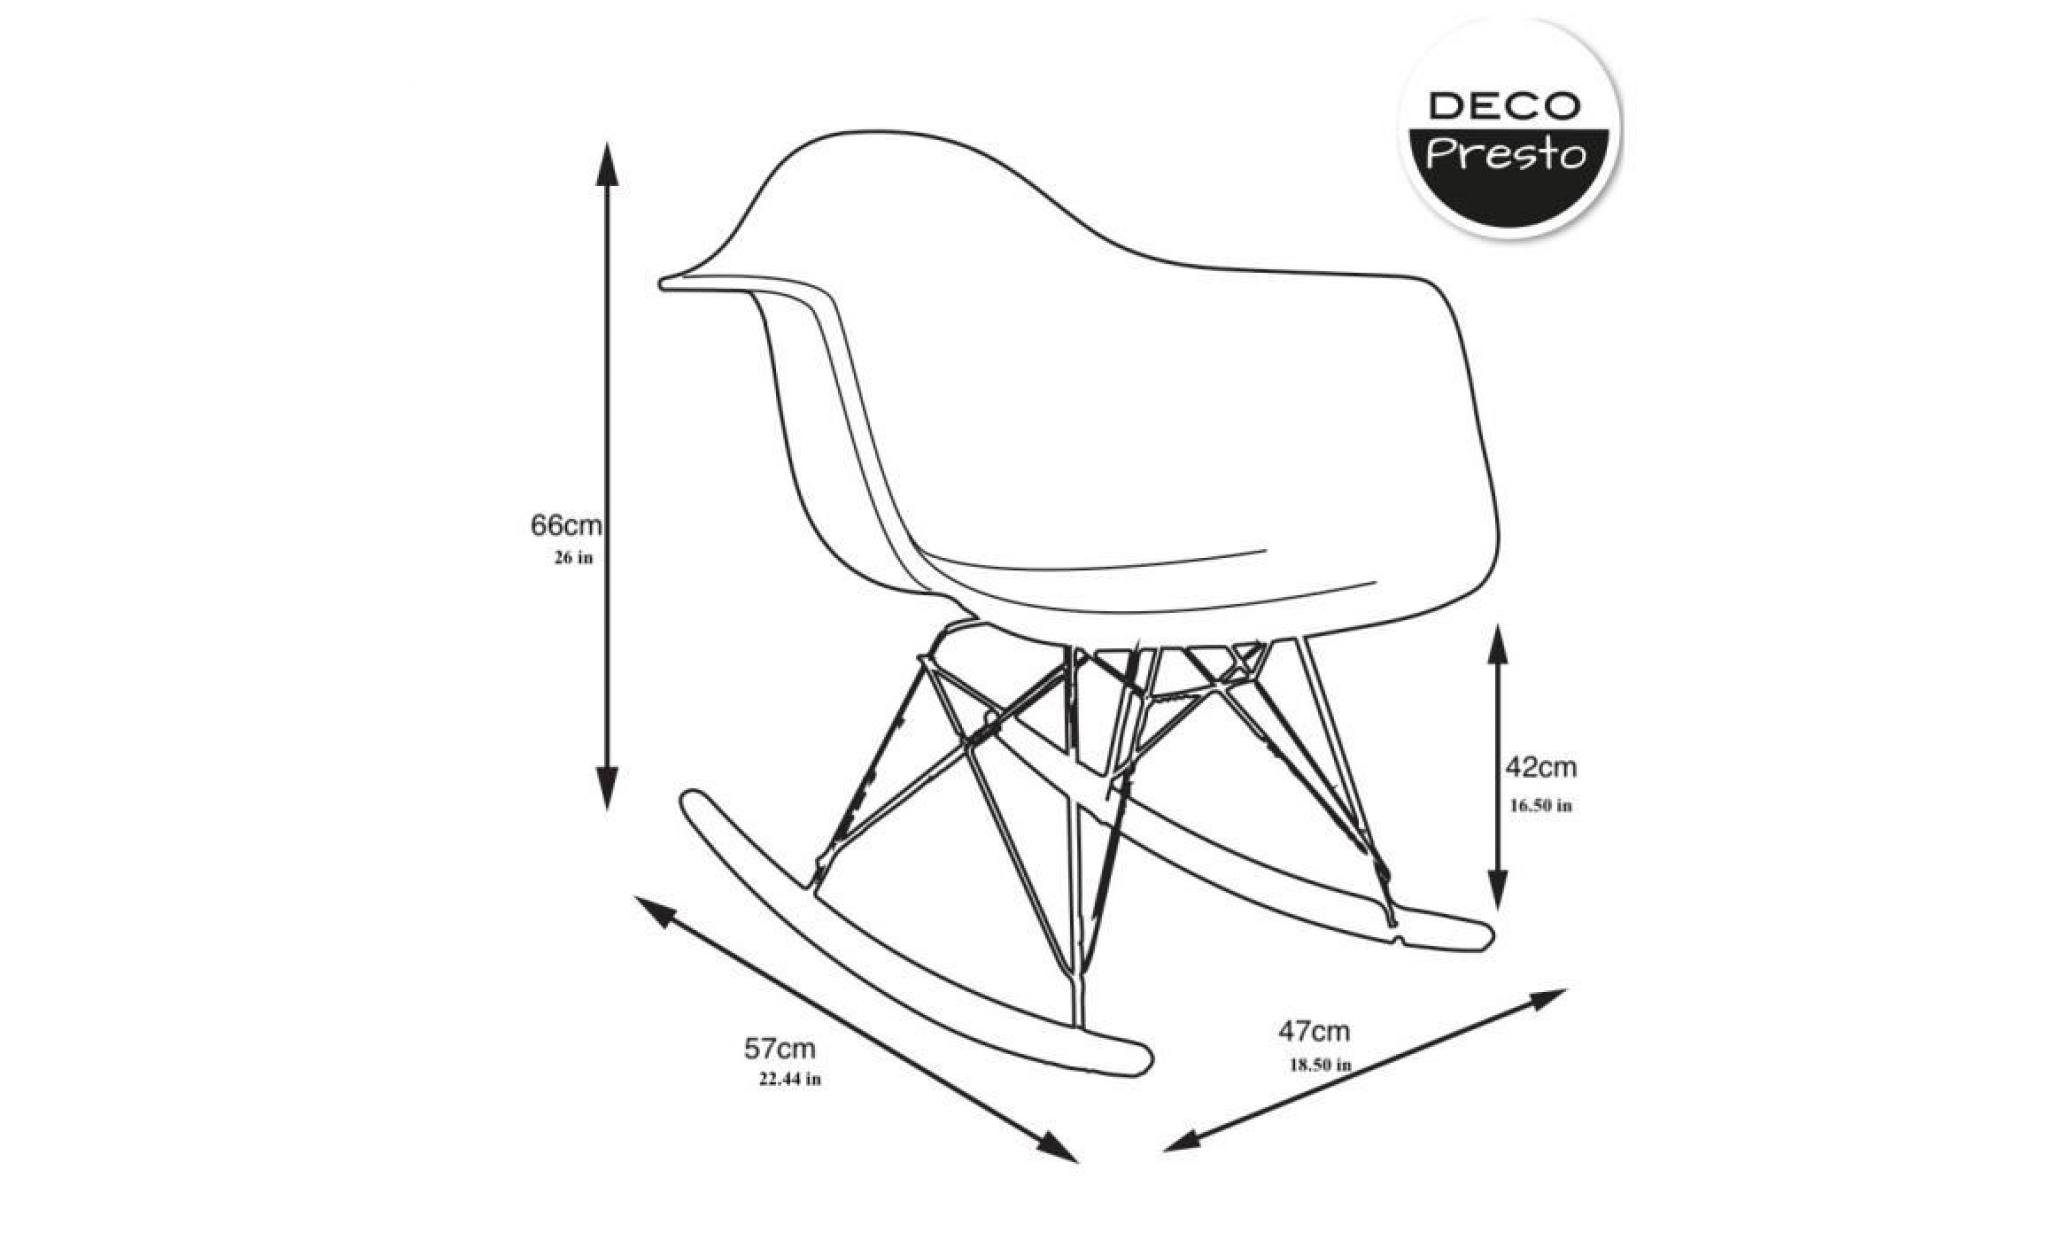 1 x fauteuil à bascule rocking chair eiffel  patchwork automne pieds: bois naturel decopresto dp rarl pcm 1 pas cher